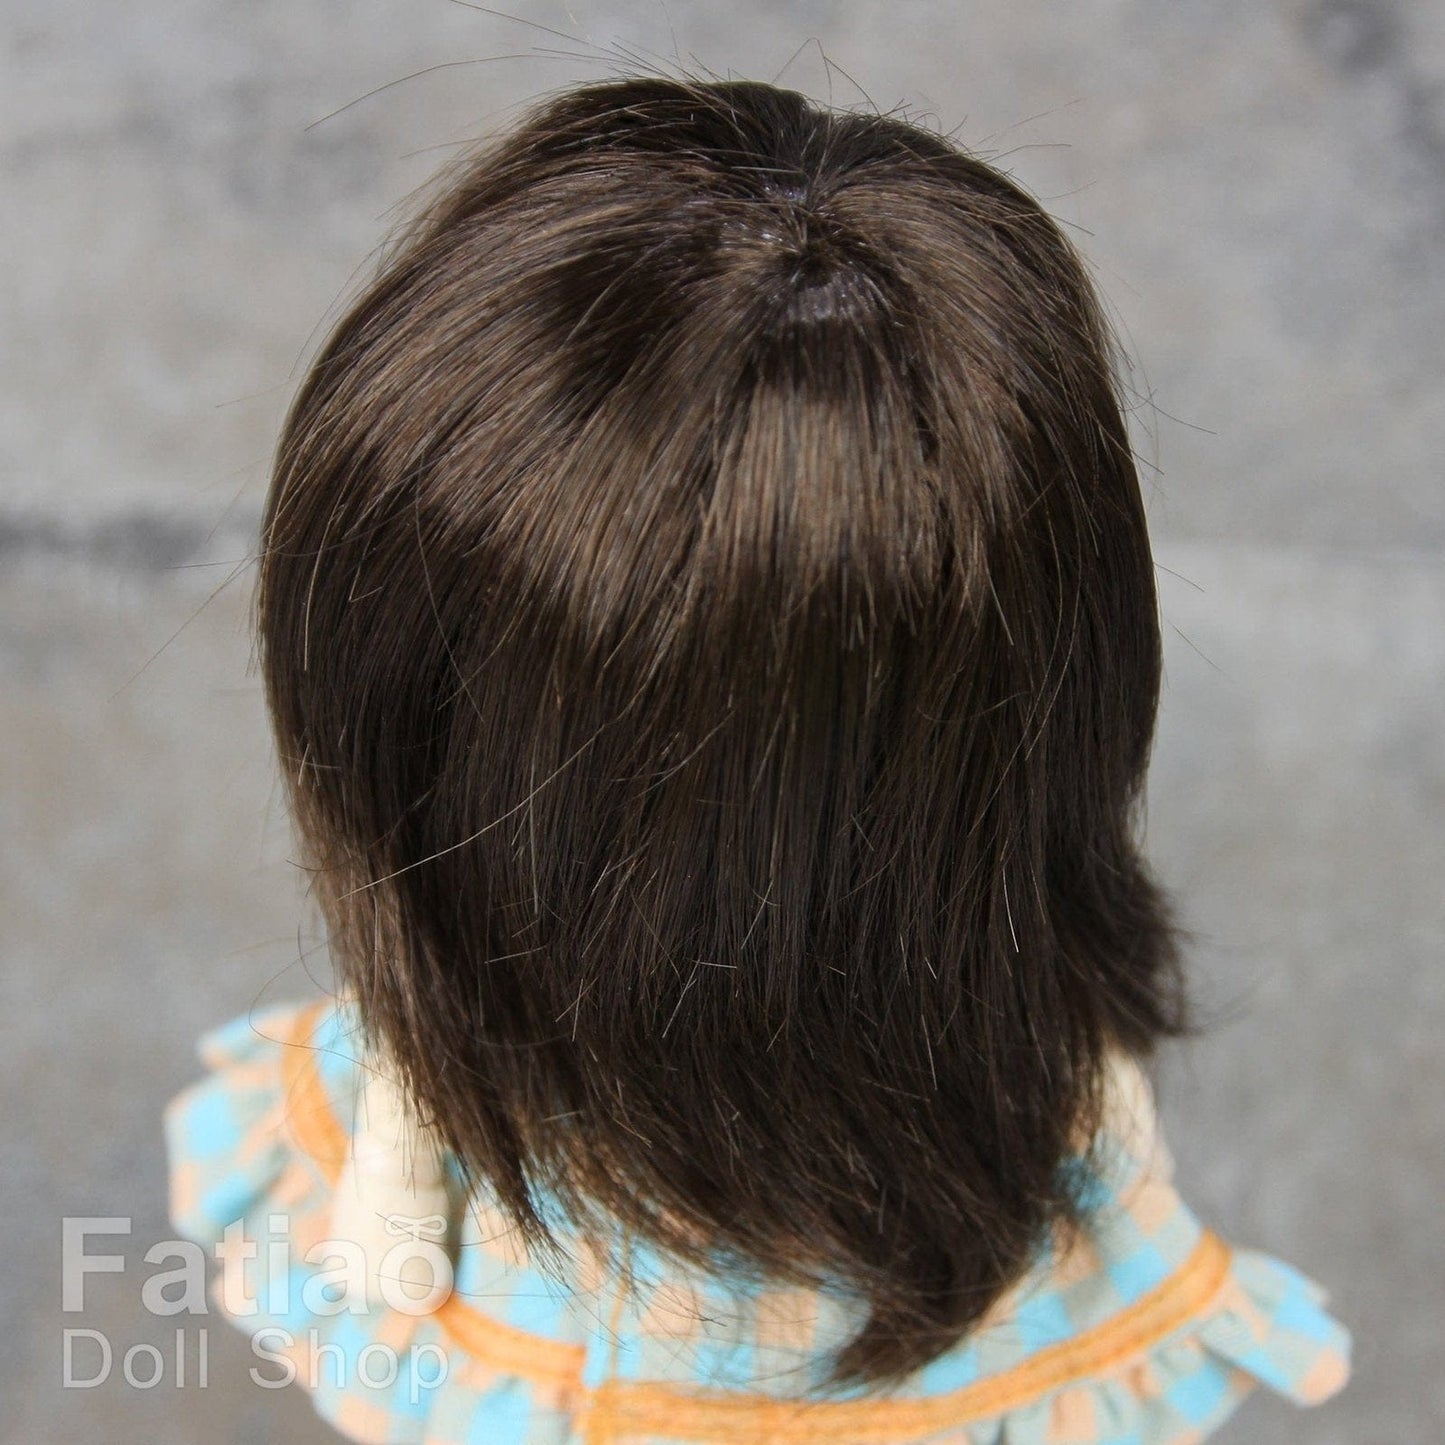 【Fatiao Doll Shop】FWF-046 娃用假髮 多色 / 3-4吋 BJD 12分 pukipuki